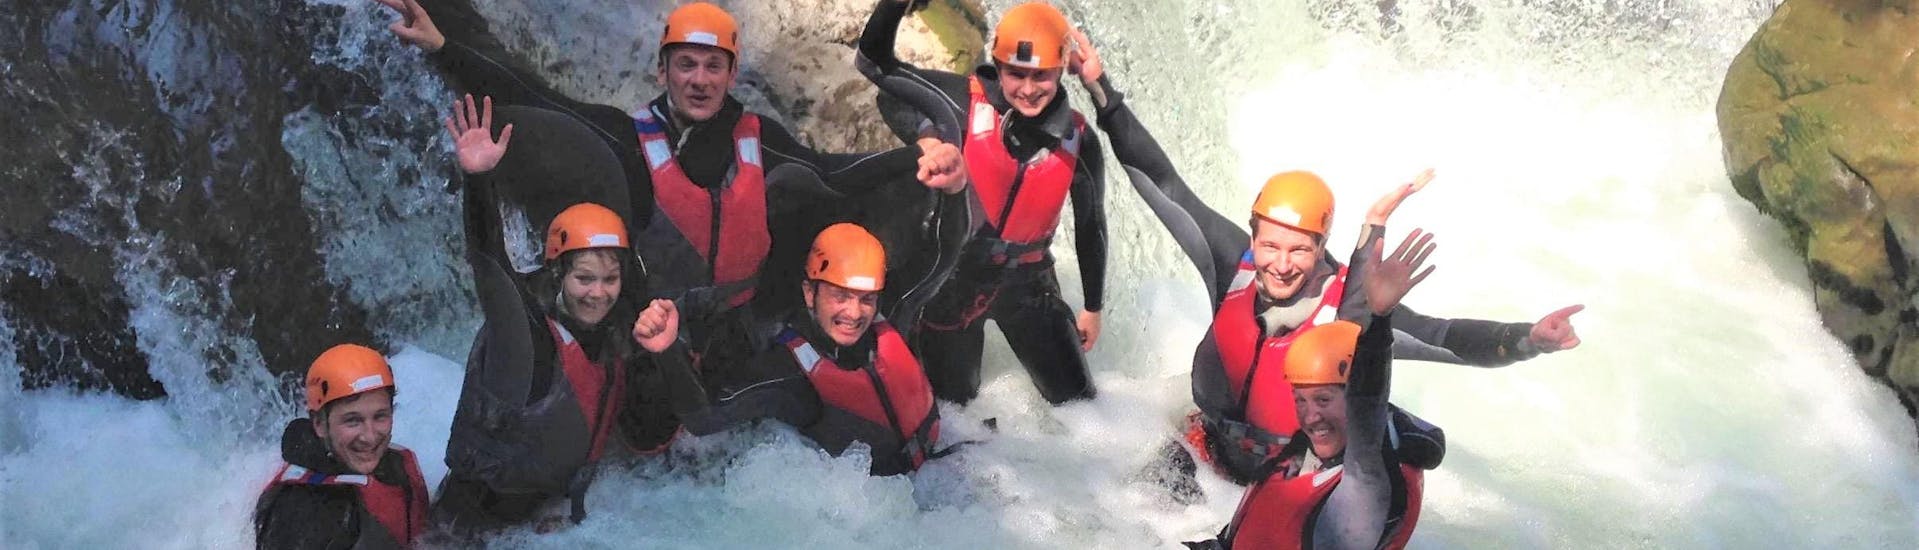 Een groep vrienden lacht in de canyon tijdens het Canyoning Vrijgezellenfeest - Garda by LOLgarda.